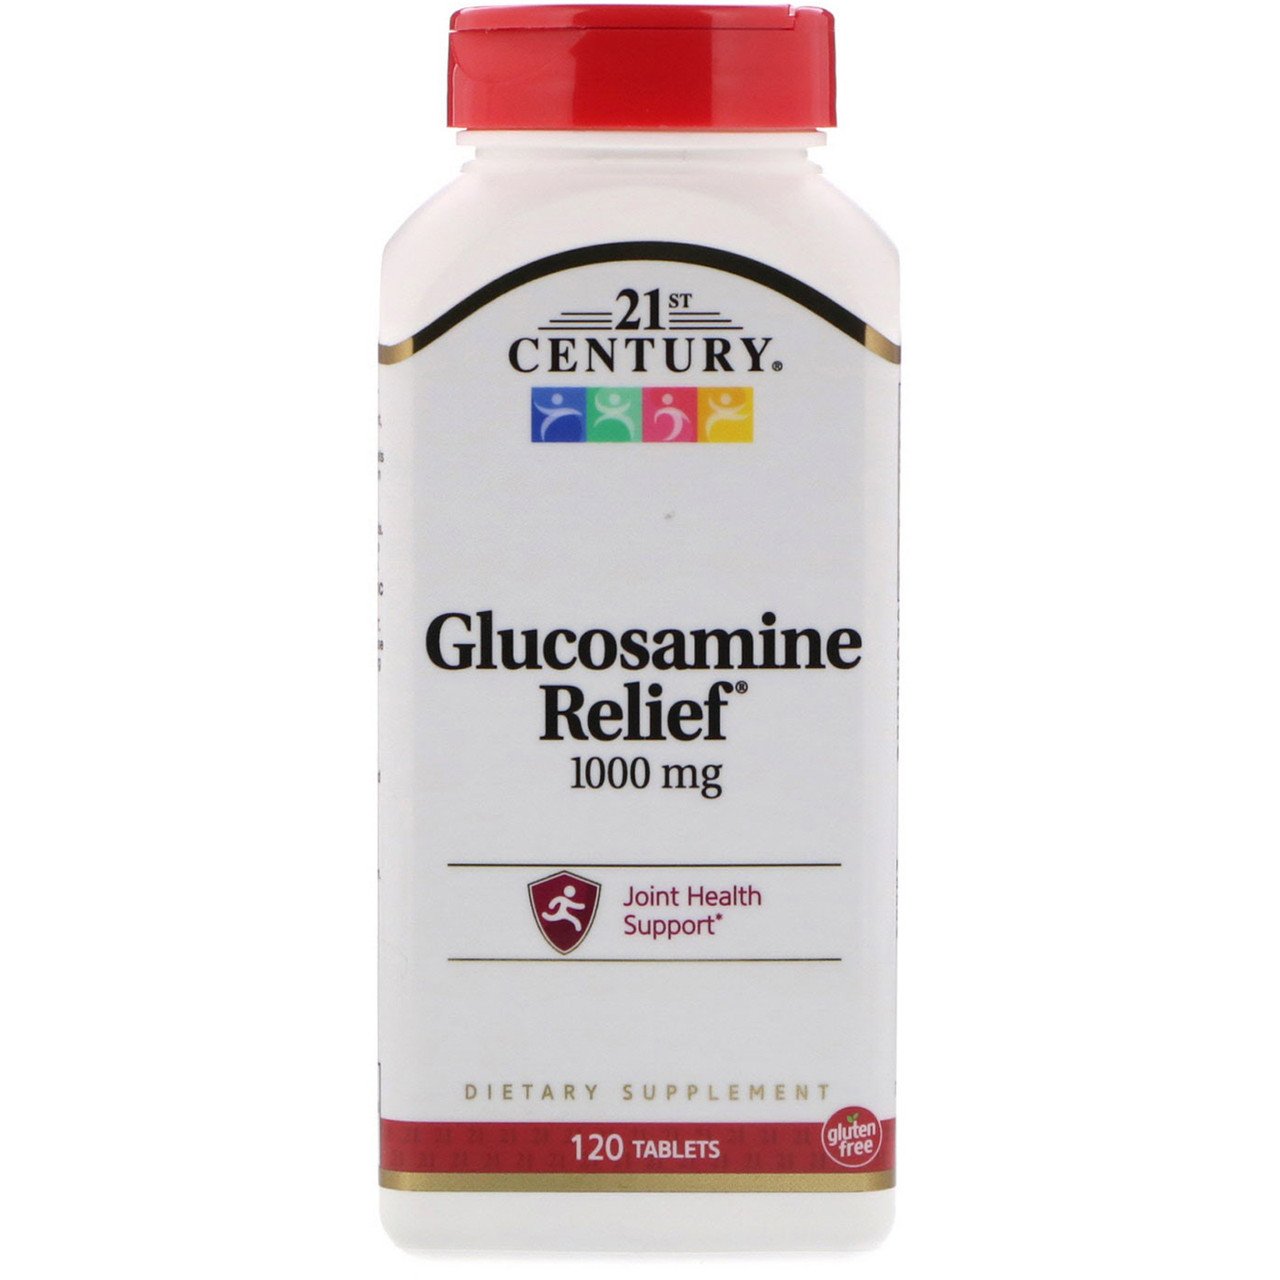 Глюкозамин 21st Century Glucosamine Relief 1000 mg (120 таб) 21 век центури,  мл, 21st Century. Глюкозамин. Поддержание здоровья Укрепление суставов и связок 